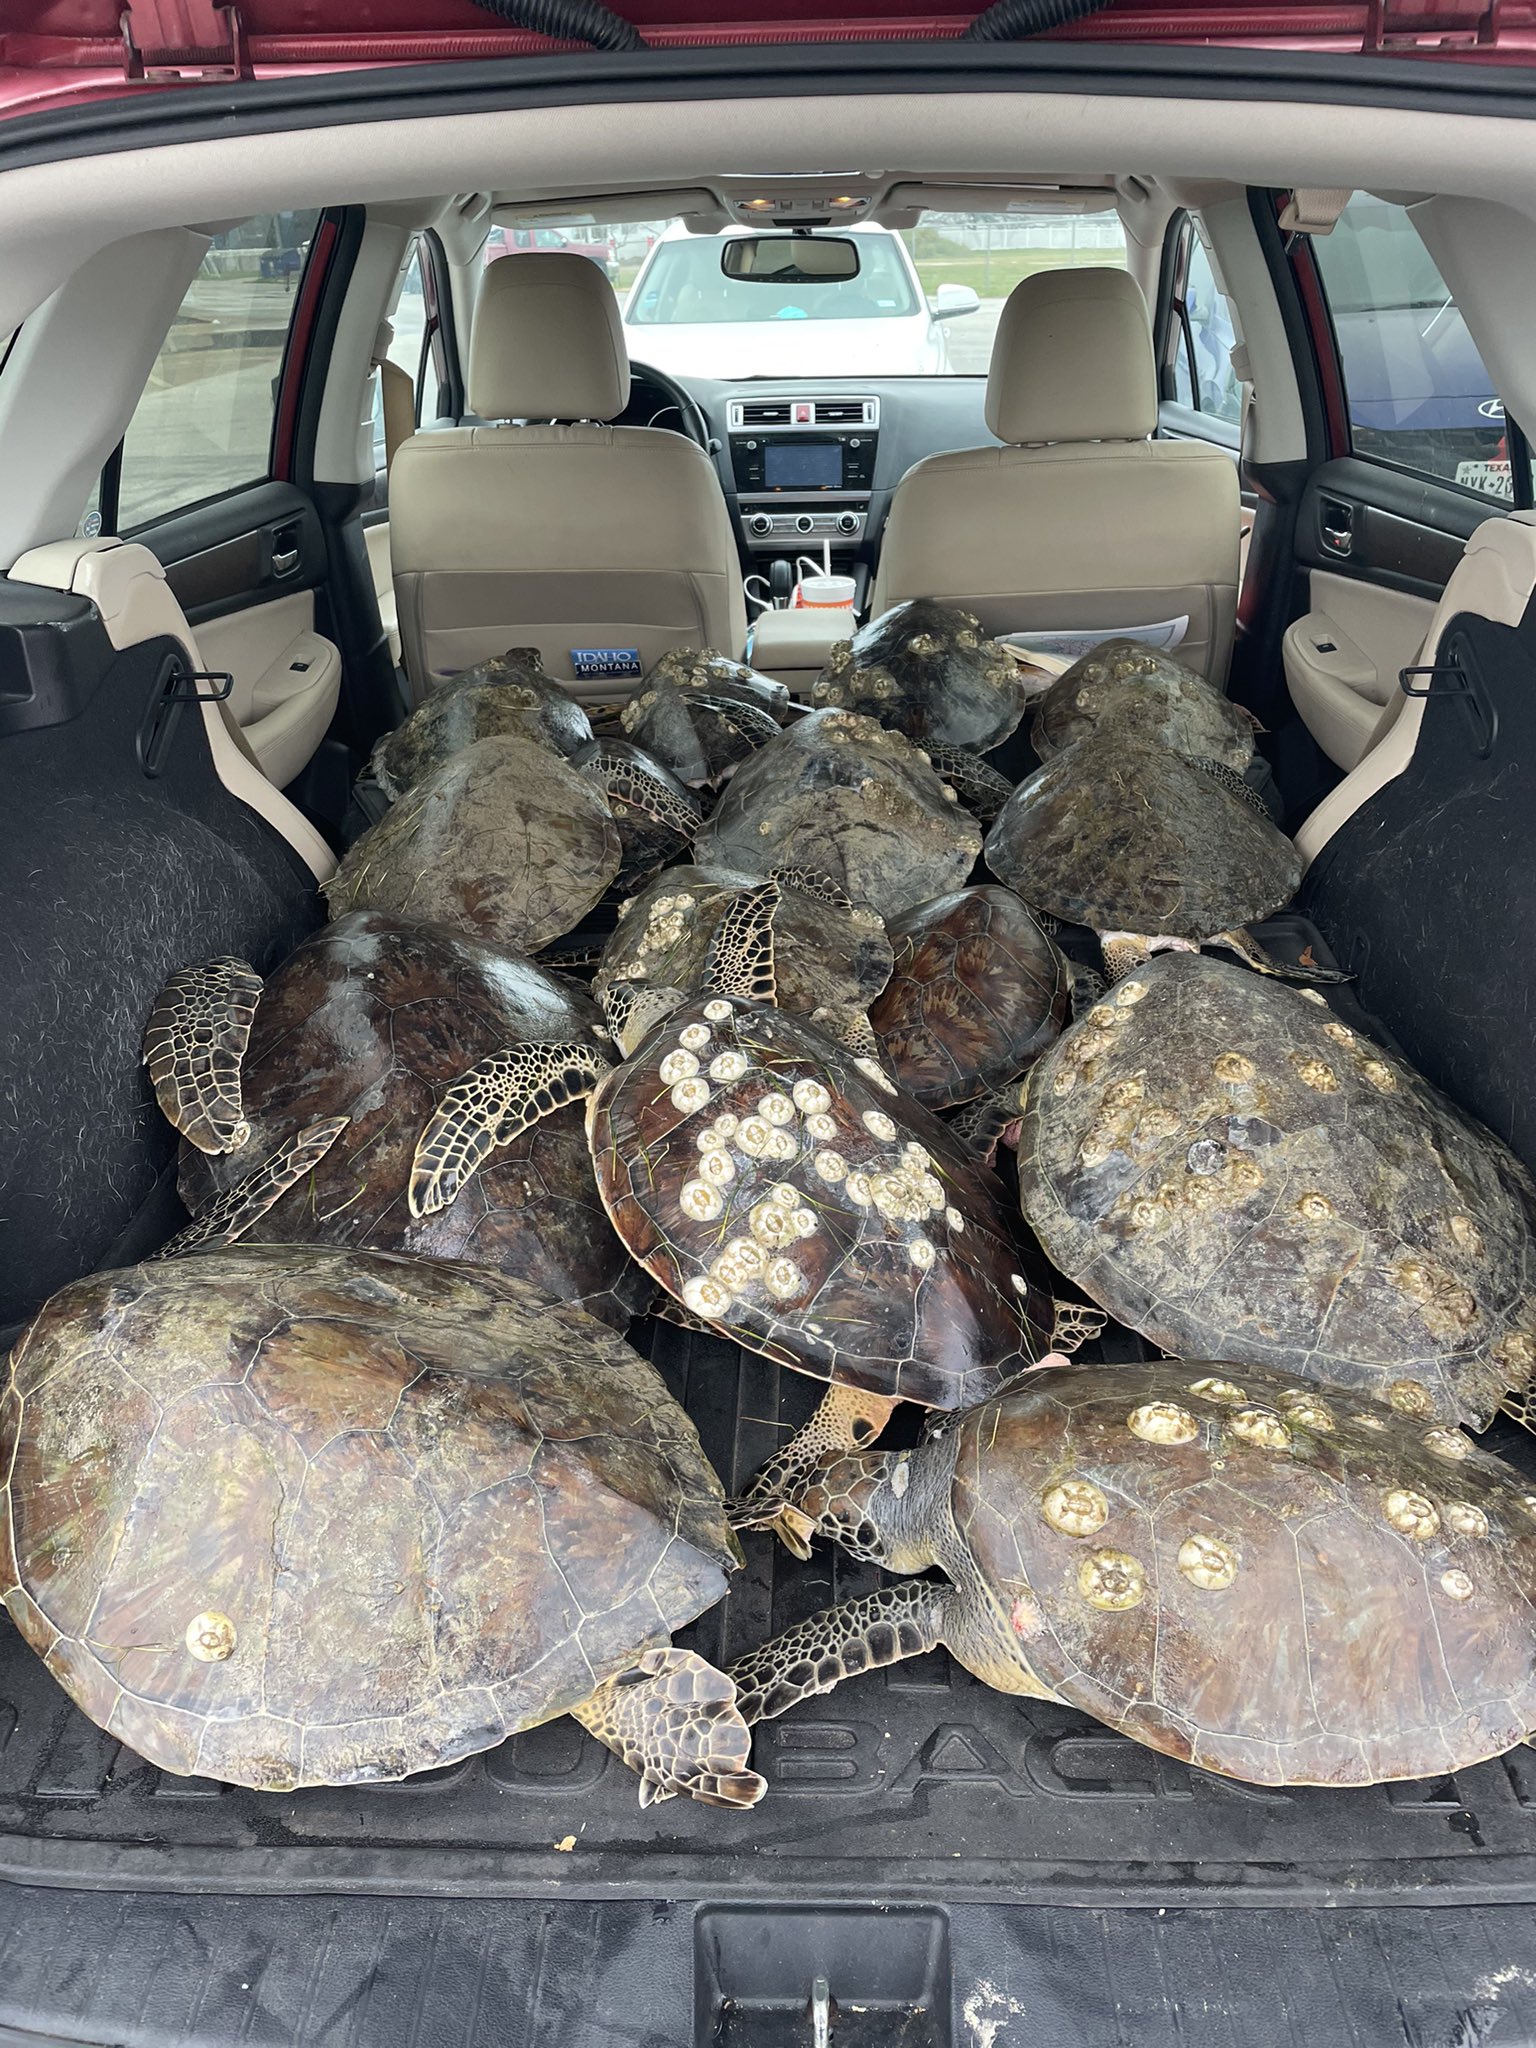 des-milliers-de-tortues-sauvees-du-froid-au-texas/eutgs0avcamfj2t-jpg.jpeg